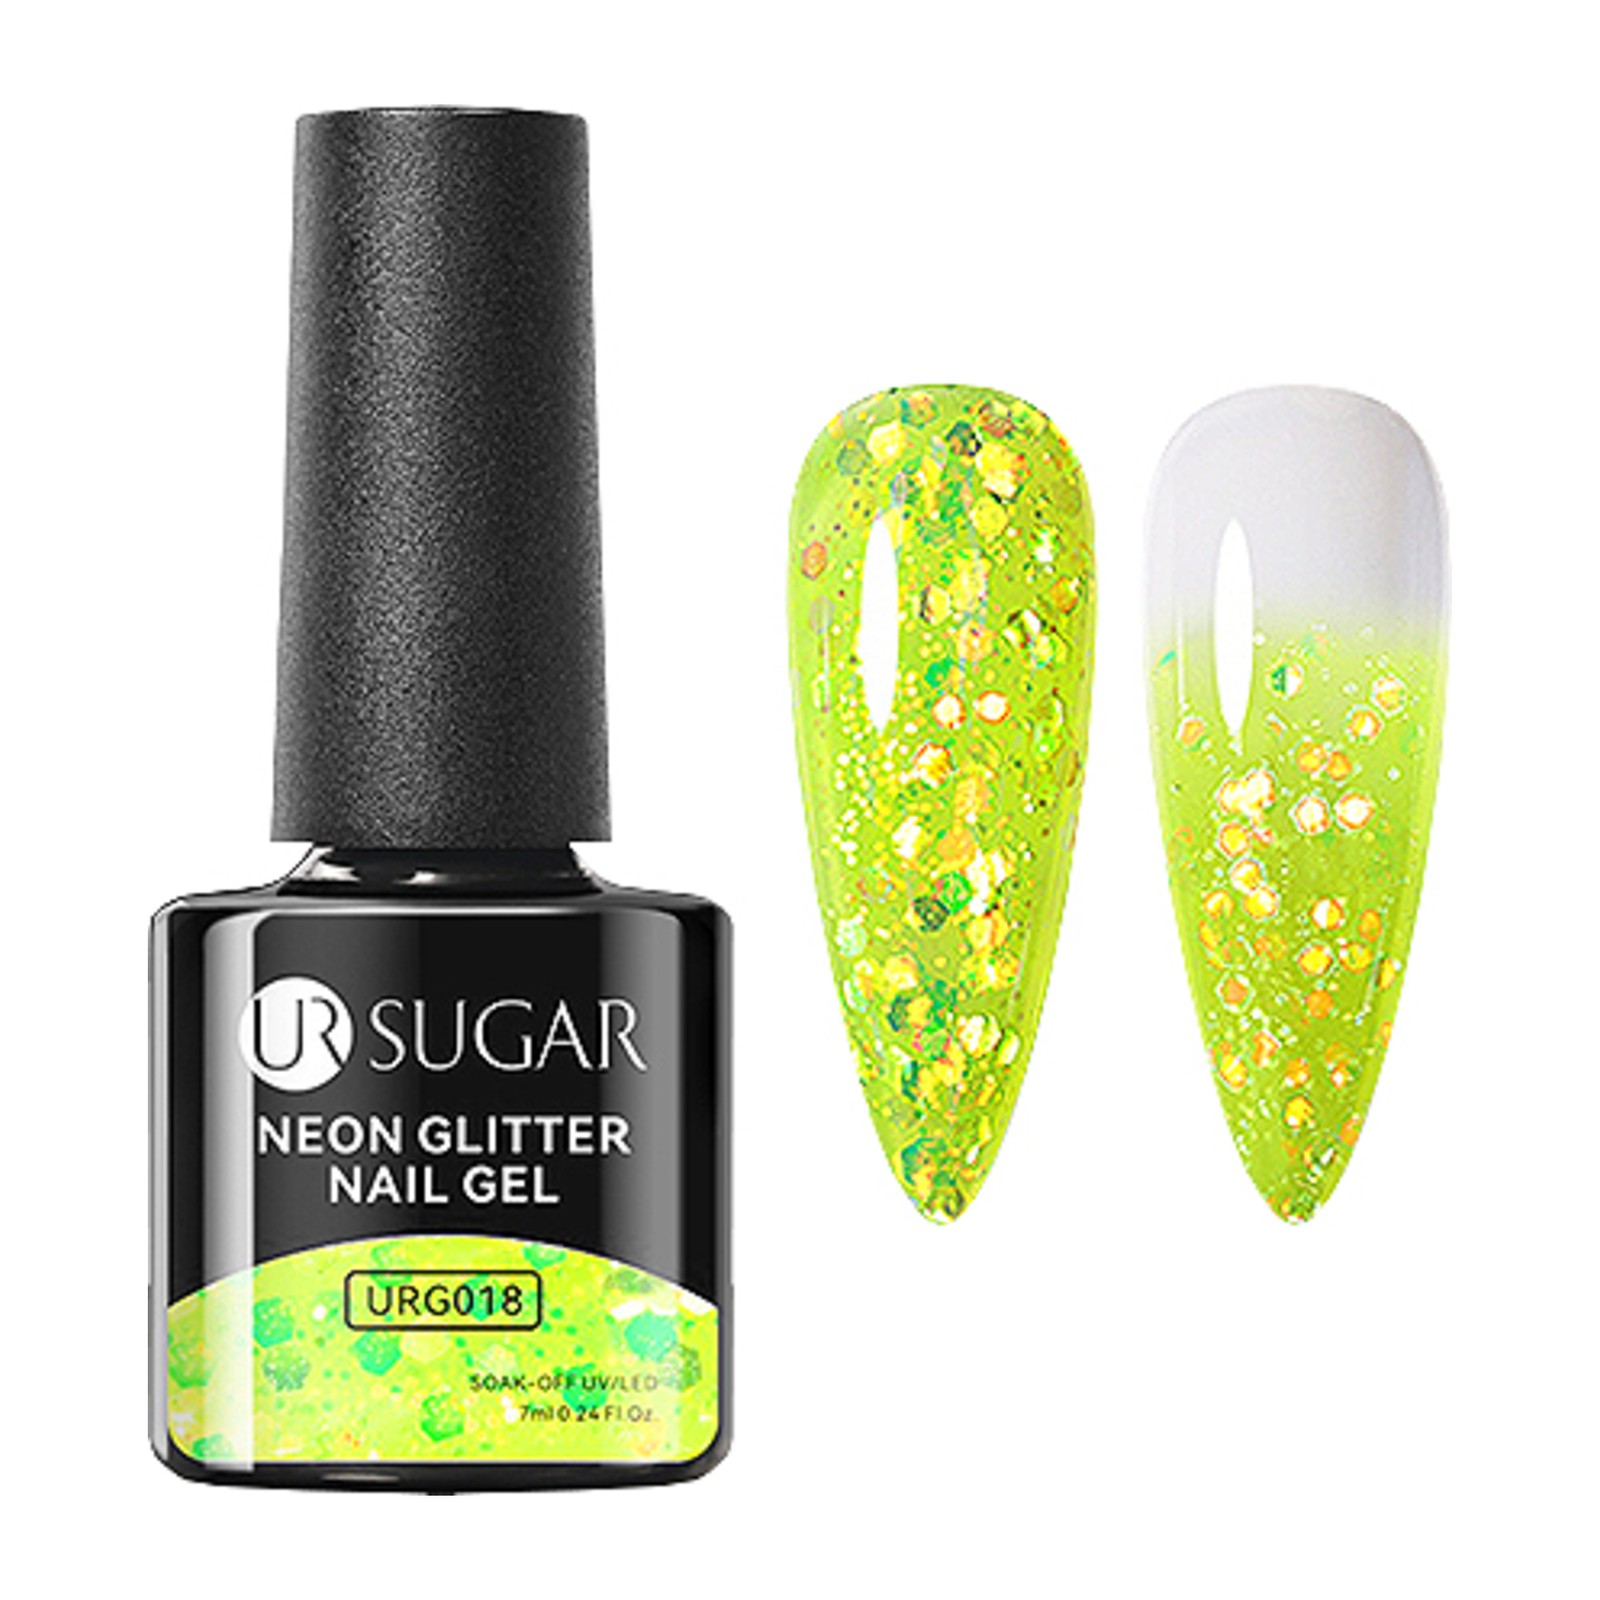 UR SUGAR - Neon Glitter Gel - URG018